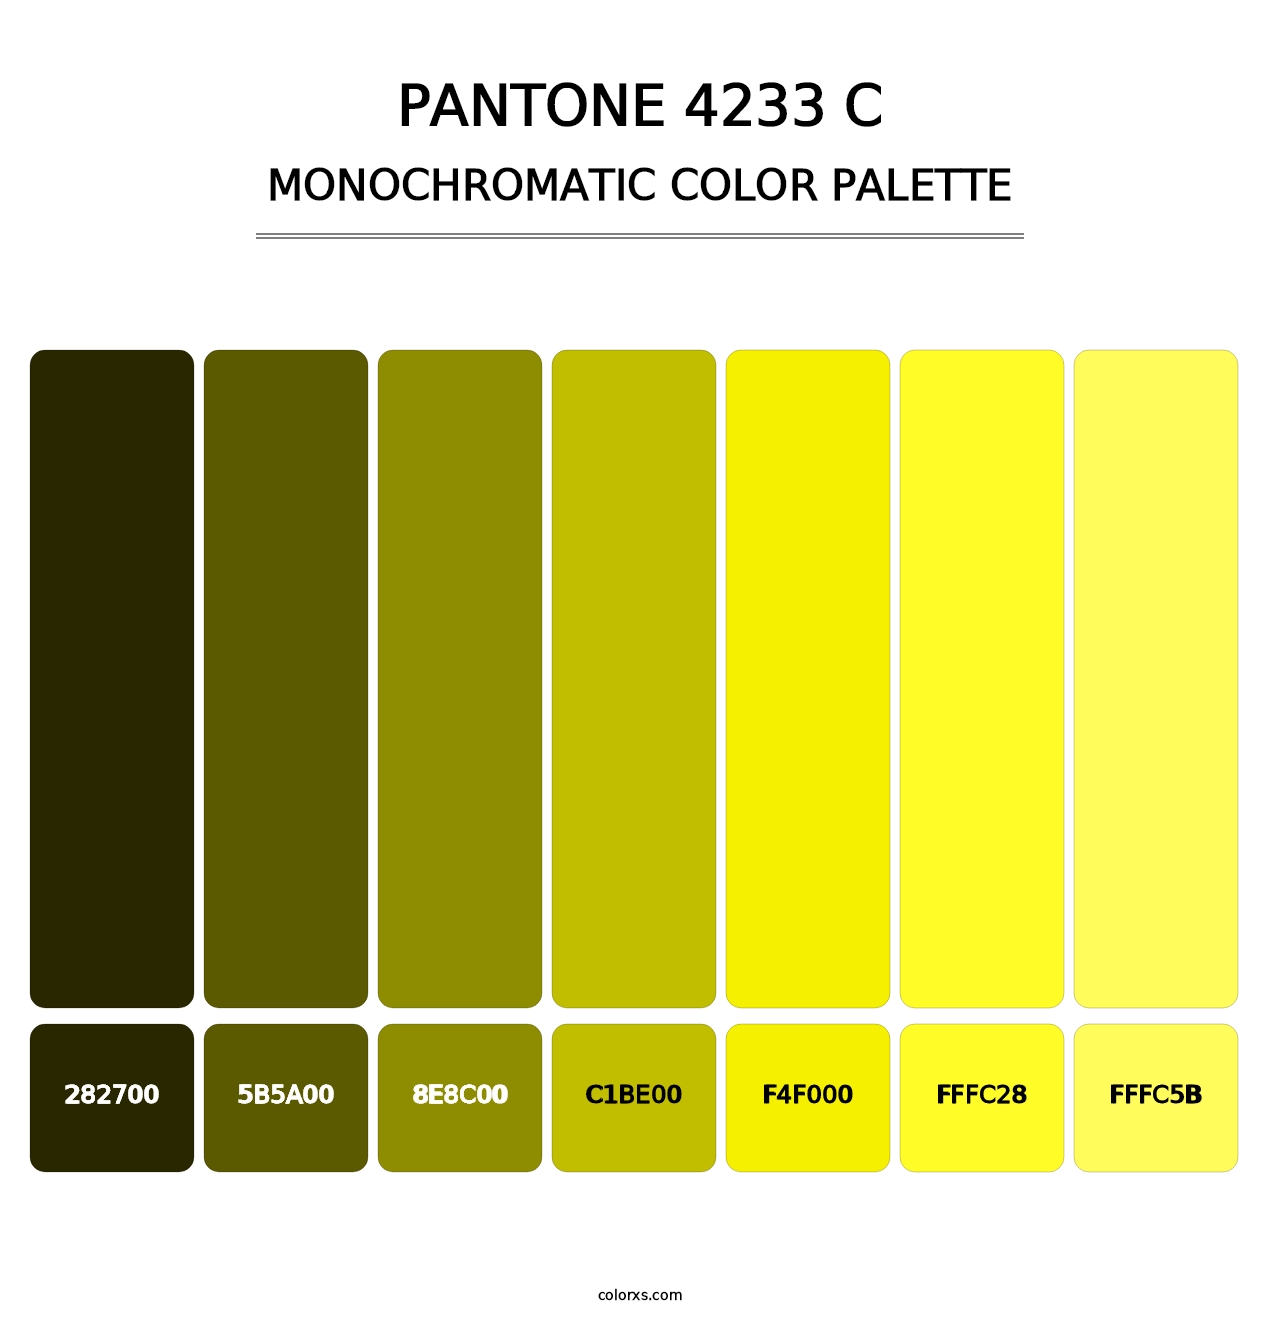 PANTONE 4233 C - Monochromatic Color Palette